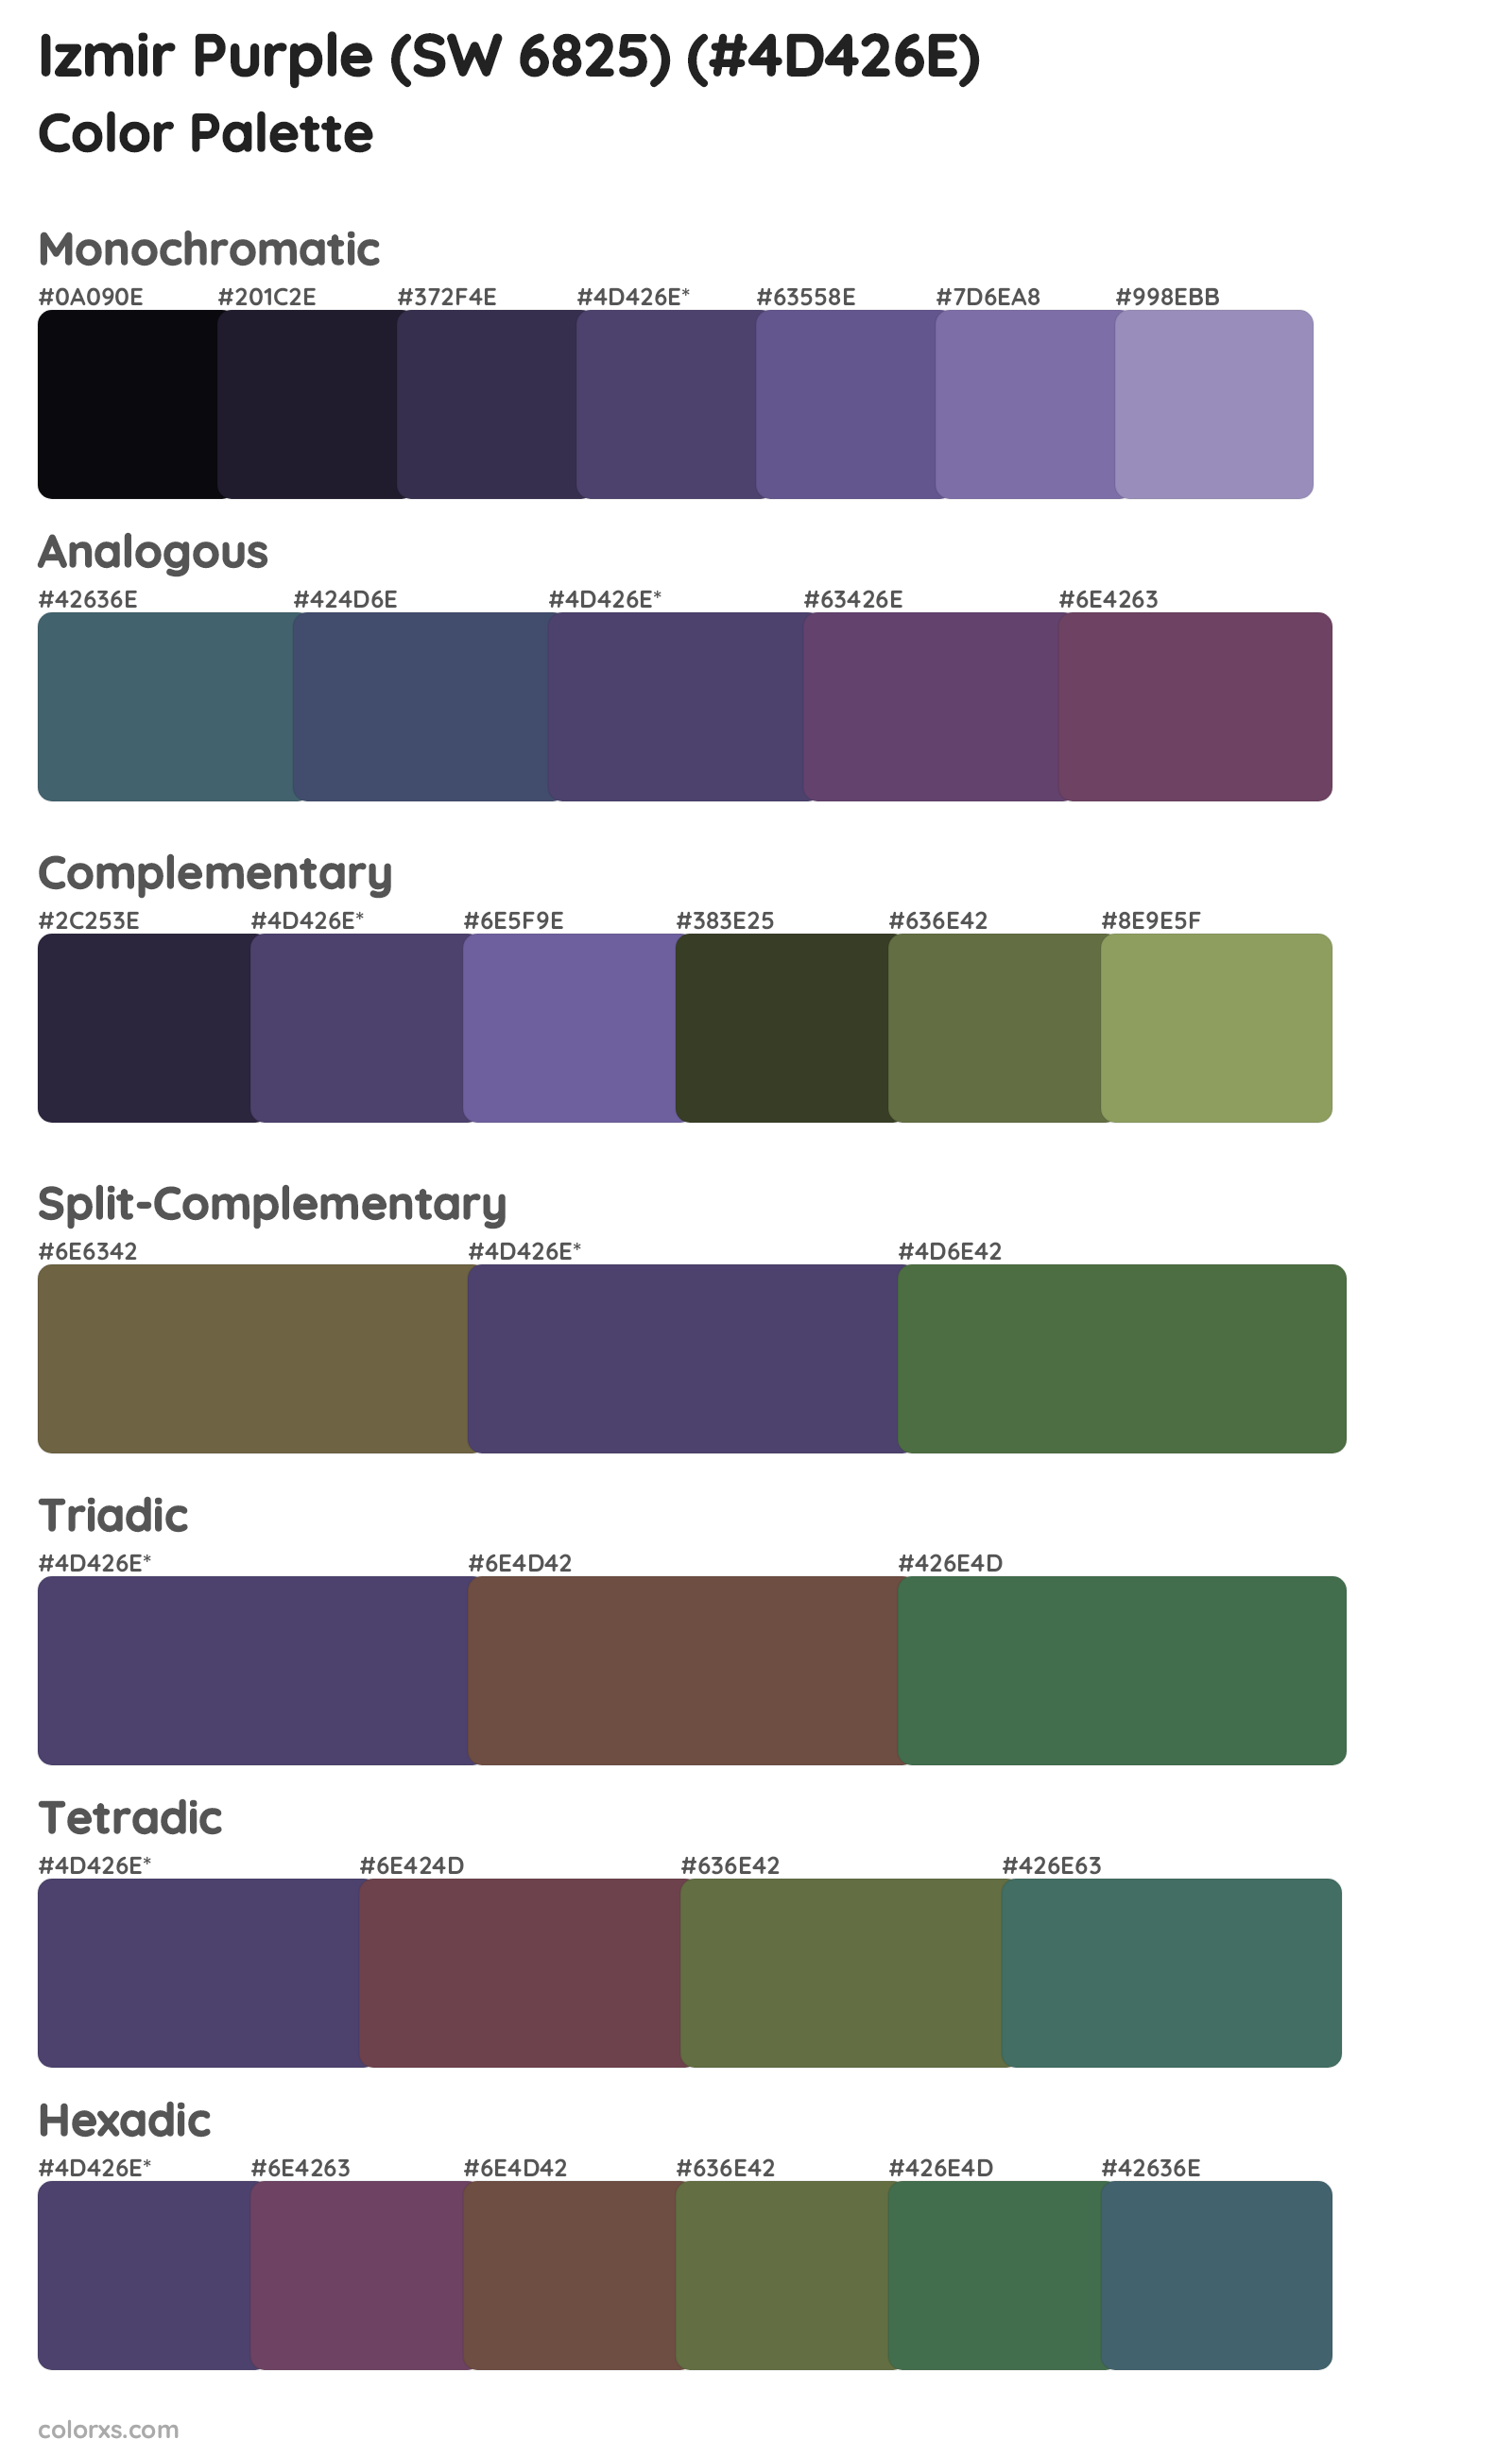 Izmir Purple (SW 6825) Color Scheme Palettes